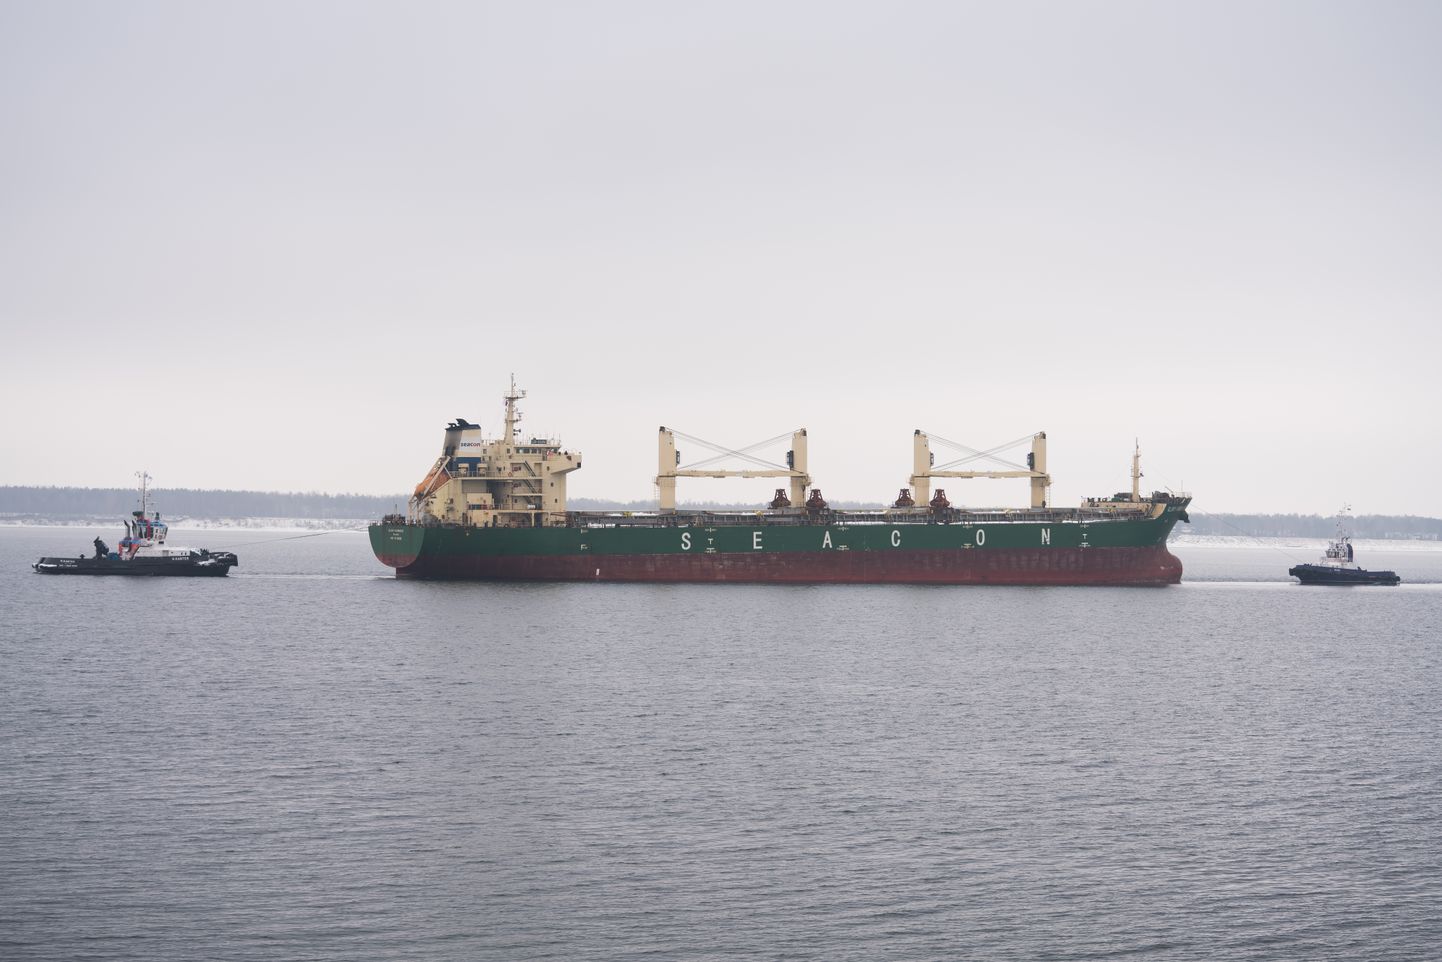 Lekkima hakanud kaubalaev Glory Hongkong pukseeritakse BLRT-sse remonti, laevaomaniku suhtumine Eesti lipu alla tulemisest ei ole teada.